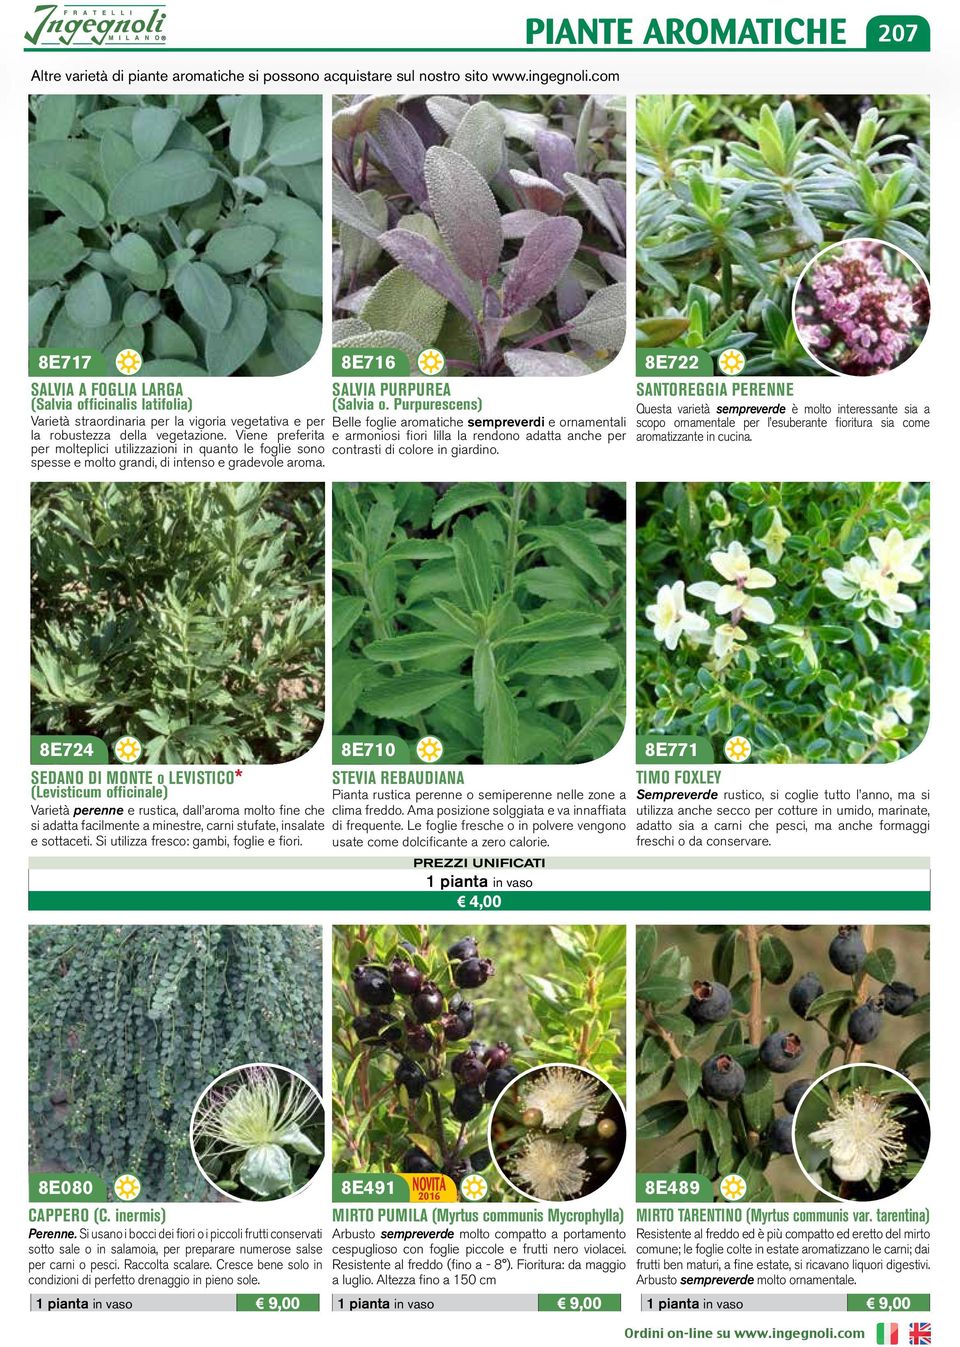 Viene preferita per molteplici utilizzazioni in quanto le foglie sono spesse e molto grandi, di intenso e gradevole aroma. 8E716 SALVIA PURPUREA (Salvia o.